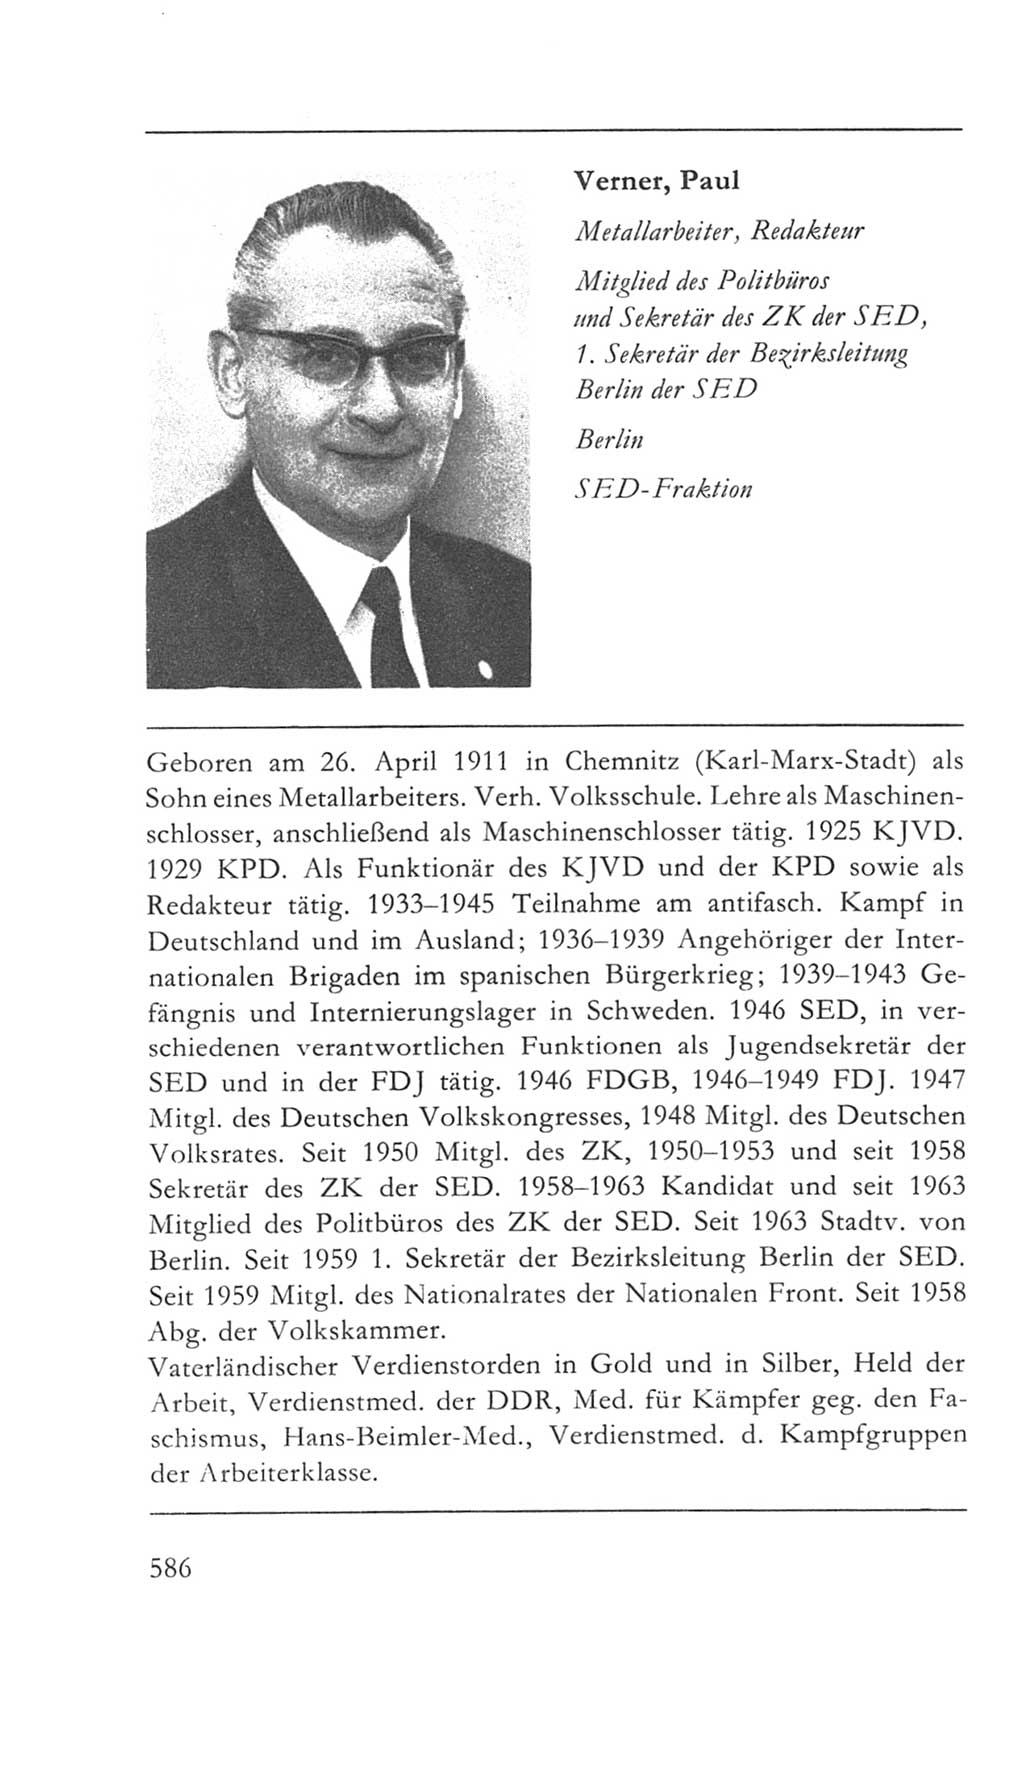 Volkskammer (VK) der Deutschen Demokratischen Republik (DDR) 5. Wahlperiode 1967-1971, Seite 586 (VK. DDR 5. WP. 1967-1971, S. 586)